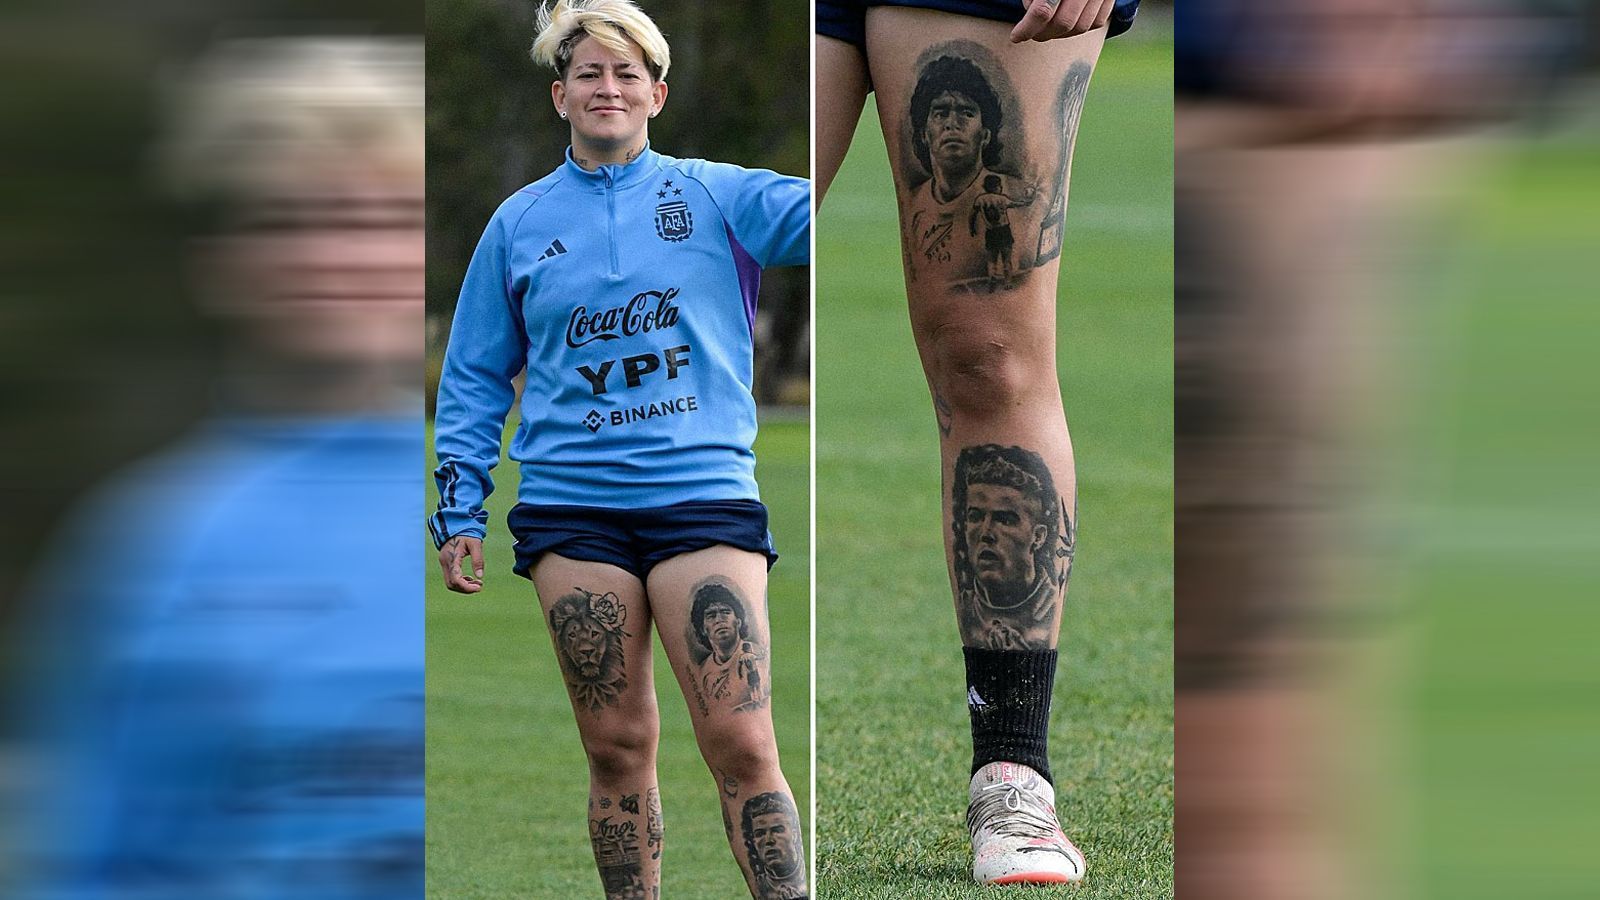 <strong>Yamila Rodriguez</strong><br>
                Die argentinische WM-Teilnehmerin Yamila Rodriguez hat nicht nur ein Faible für den Fußball, sondern ganz offensichtlich auch für Tattoos. Die 25-Jährige trägt auf ihrem linken Bein die mittlerweile verstorbene Legende Diego Maradona als Tattoo. Diese Zuneigung ist wenig überraschend, schließlich spielte Rodriguez wie einst Maradona auch bei den Boca Juniors. Viel überraschender ist hingegen Rodriguez' offensichtliche Sympathie für Cristiano Ronaldo. Den Portugiesen trägt sie nämlich ebenfalls als Tattoo und zwar direkt unter jenem von Maradona. Aber mal ehrlich: So richtig geglückt scheint das CR7-Tattoo optisch nicht zu sein, gerade im Vergleich zum perfekten Maradona darüber.
